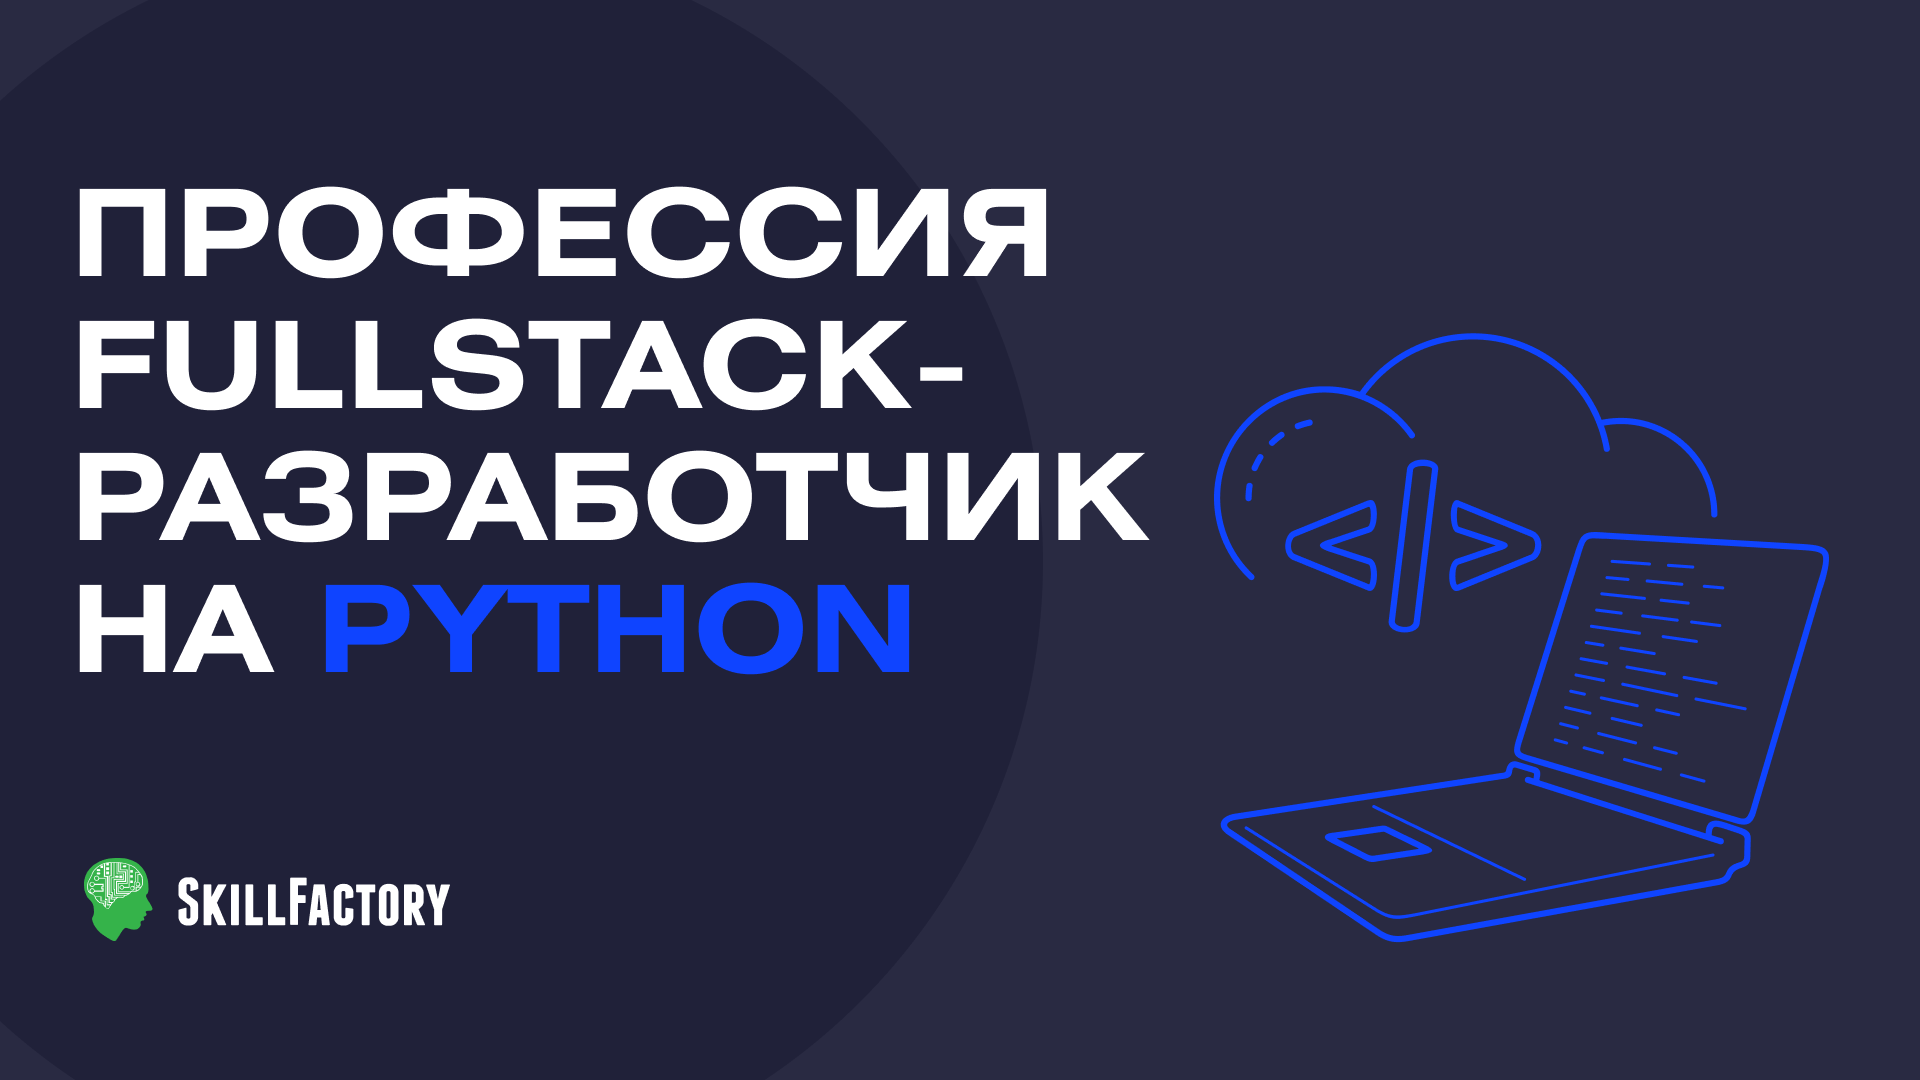 Профессия Fullstack-разработчик на Python профессия тестировщик на python